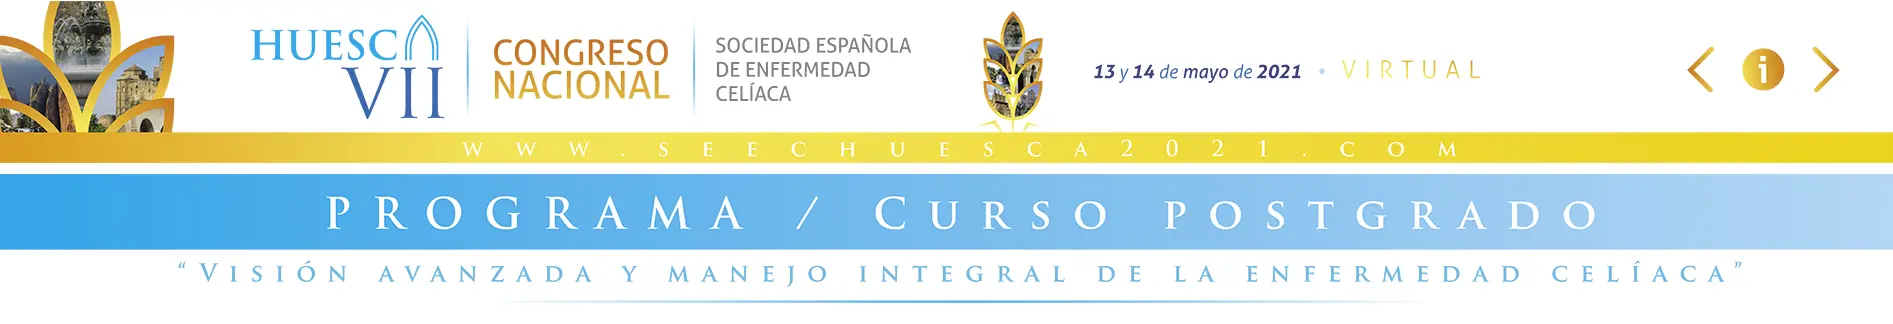 Curso Posgrado VII Congreso Huesca Sociedad espanola de enfermedad celiaca